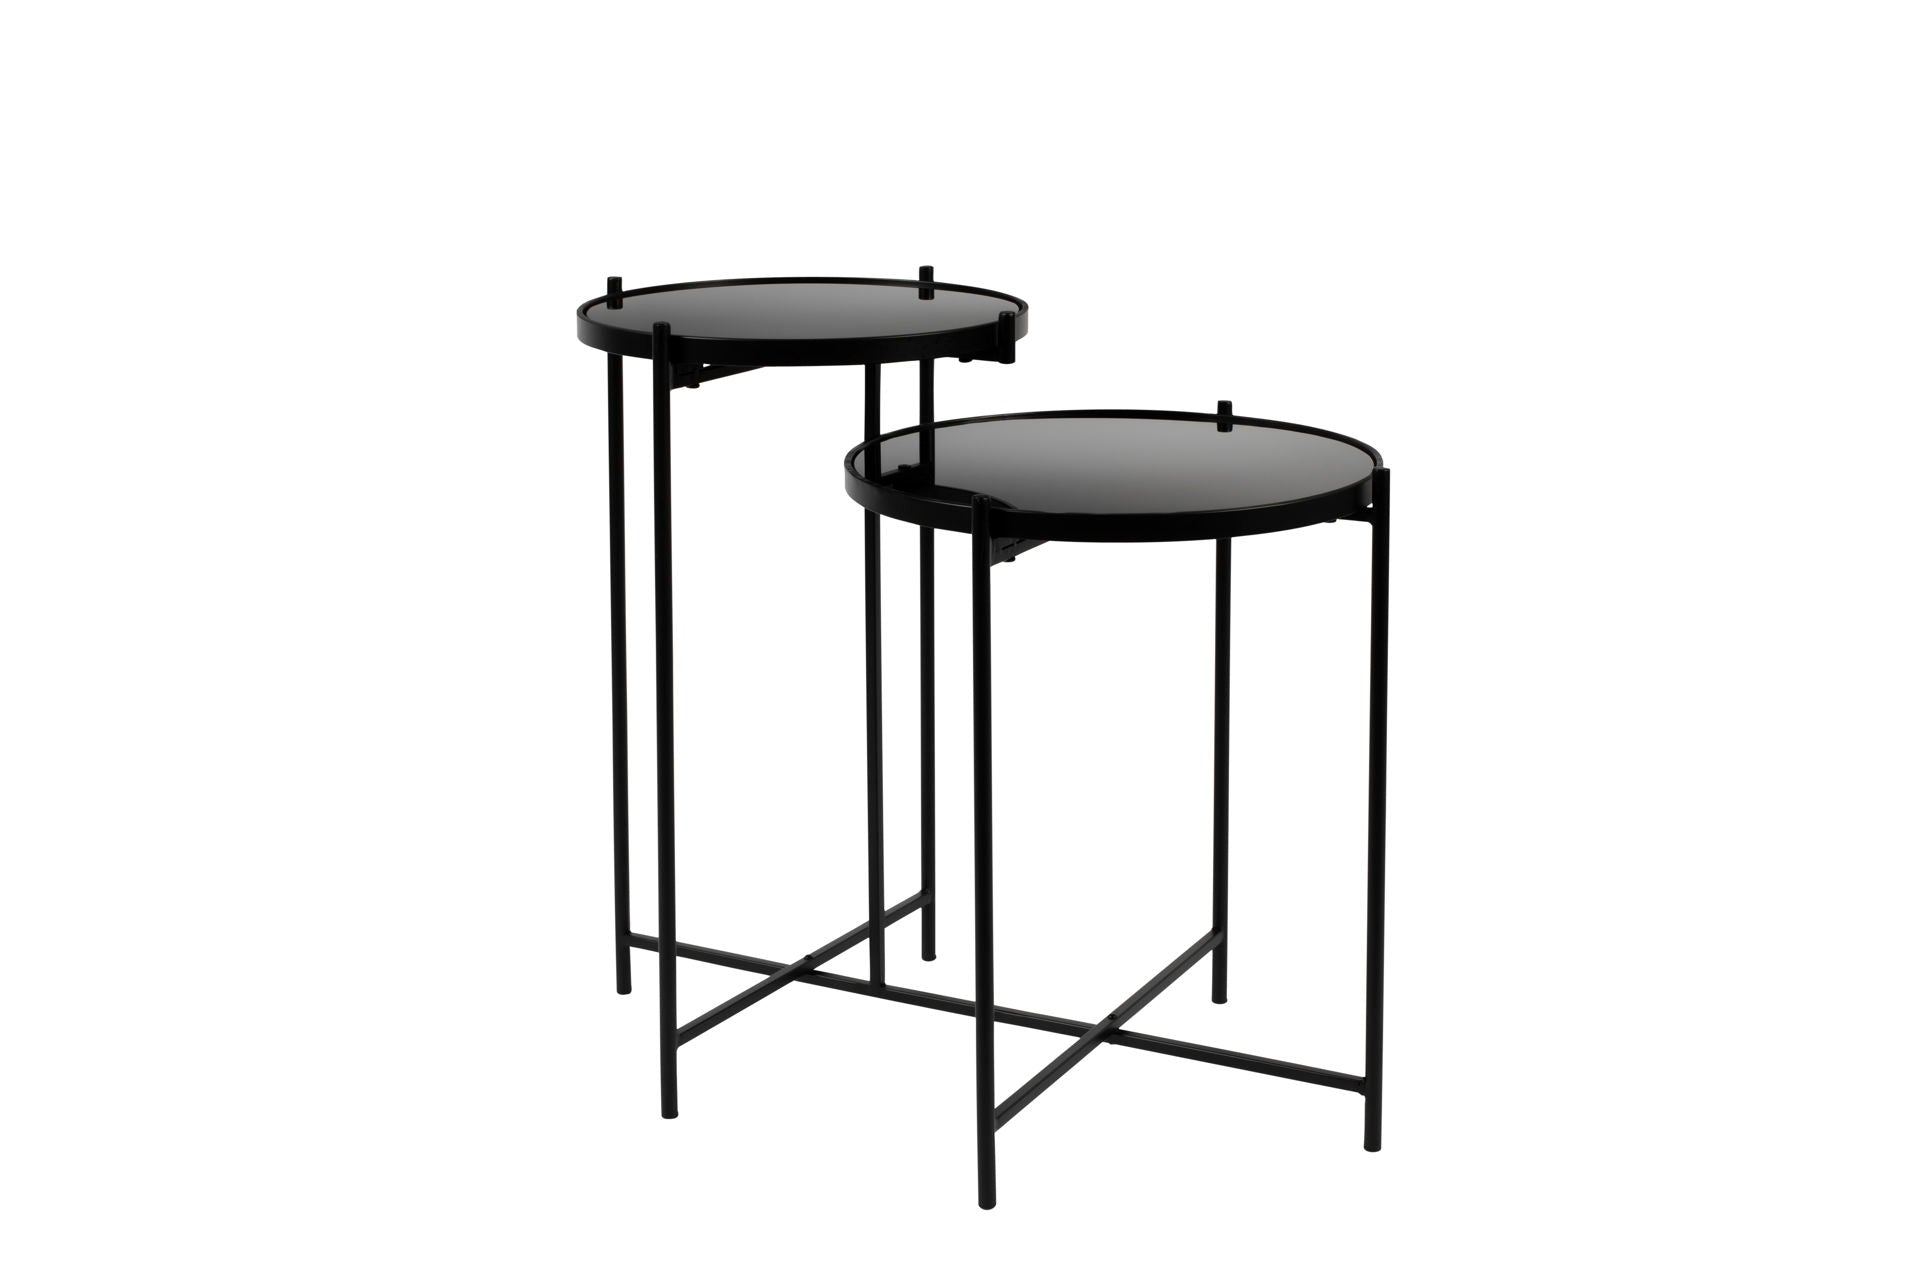 Table d'appoint Nancy's Moncks Corner - Moderne - Noir Brillant, Fer - 43 cm x 86 cm x 60 cm